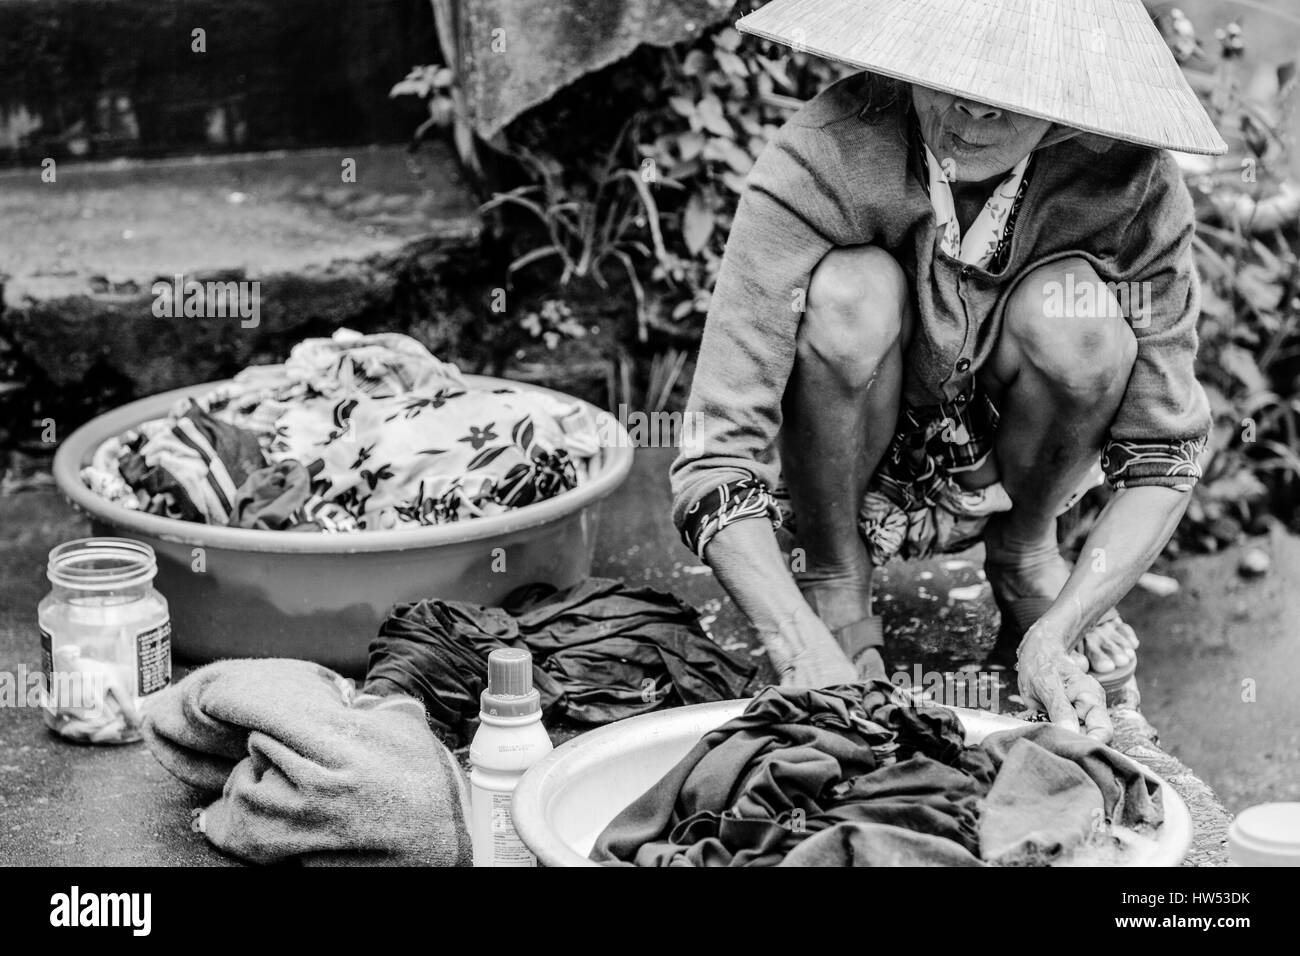 Hue, Vietnam - 9 Marzo, 2014: Old mujer vietnamita está lavando ropa en la orilla del río Perfume, el 9 de marzo de 2014, Hue, Vietnam Foto de stock